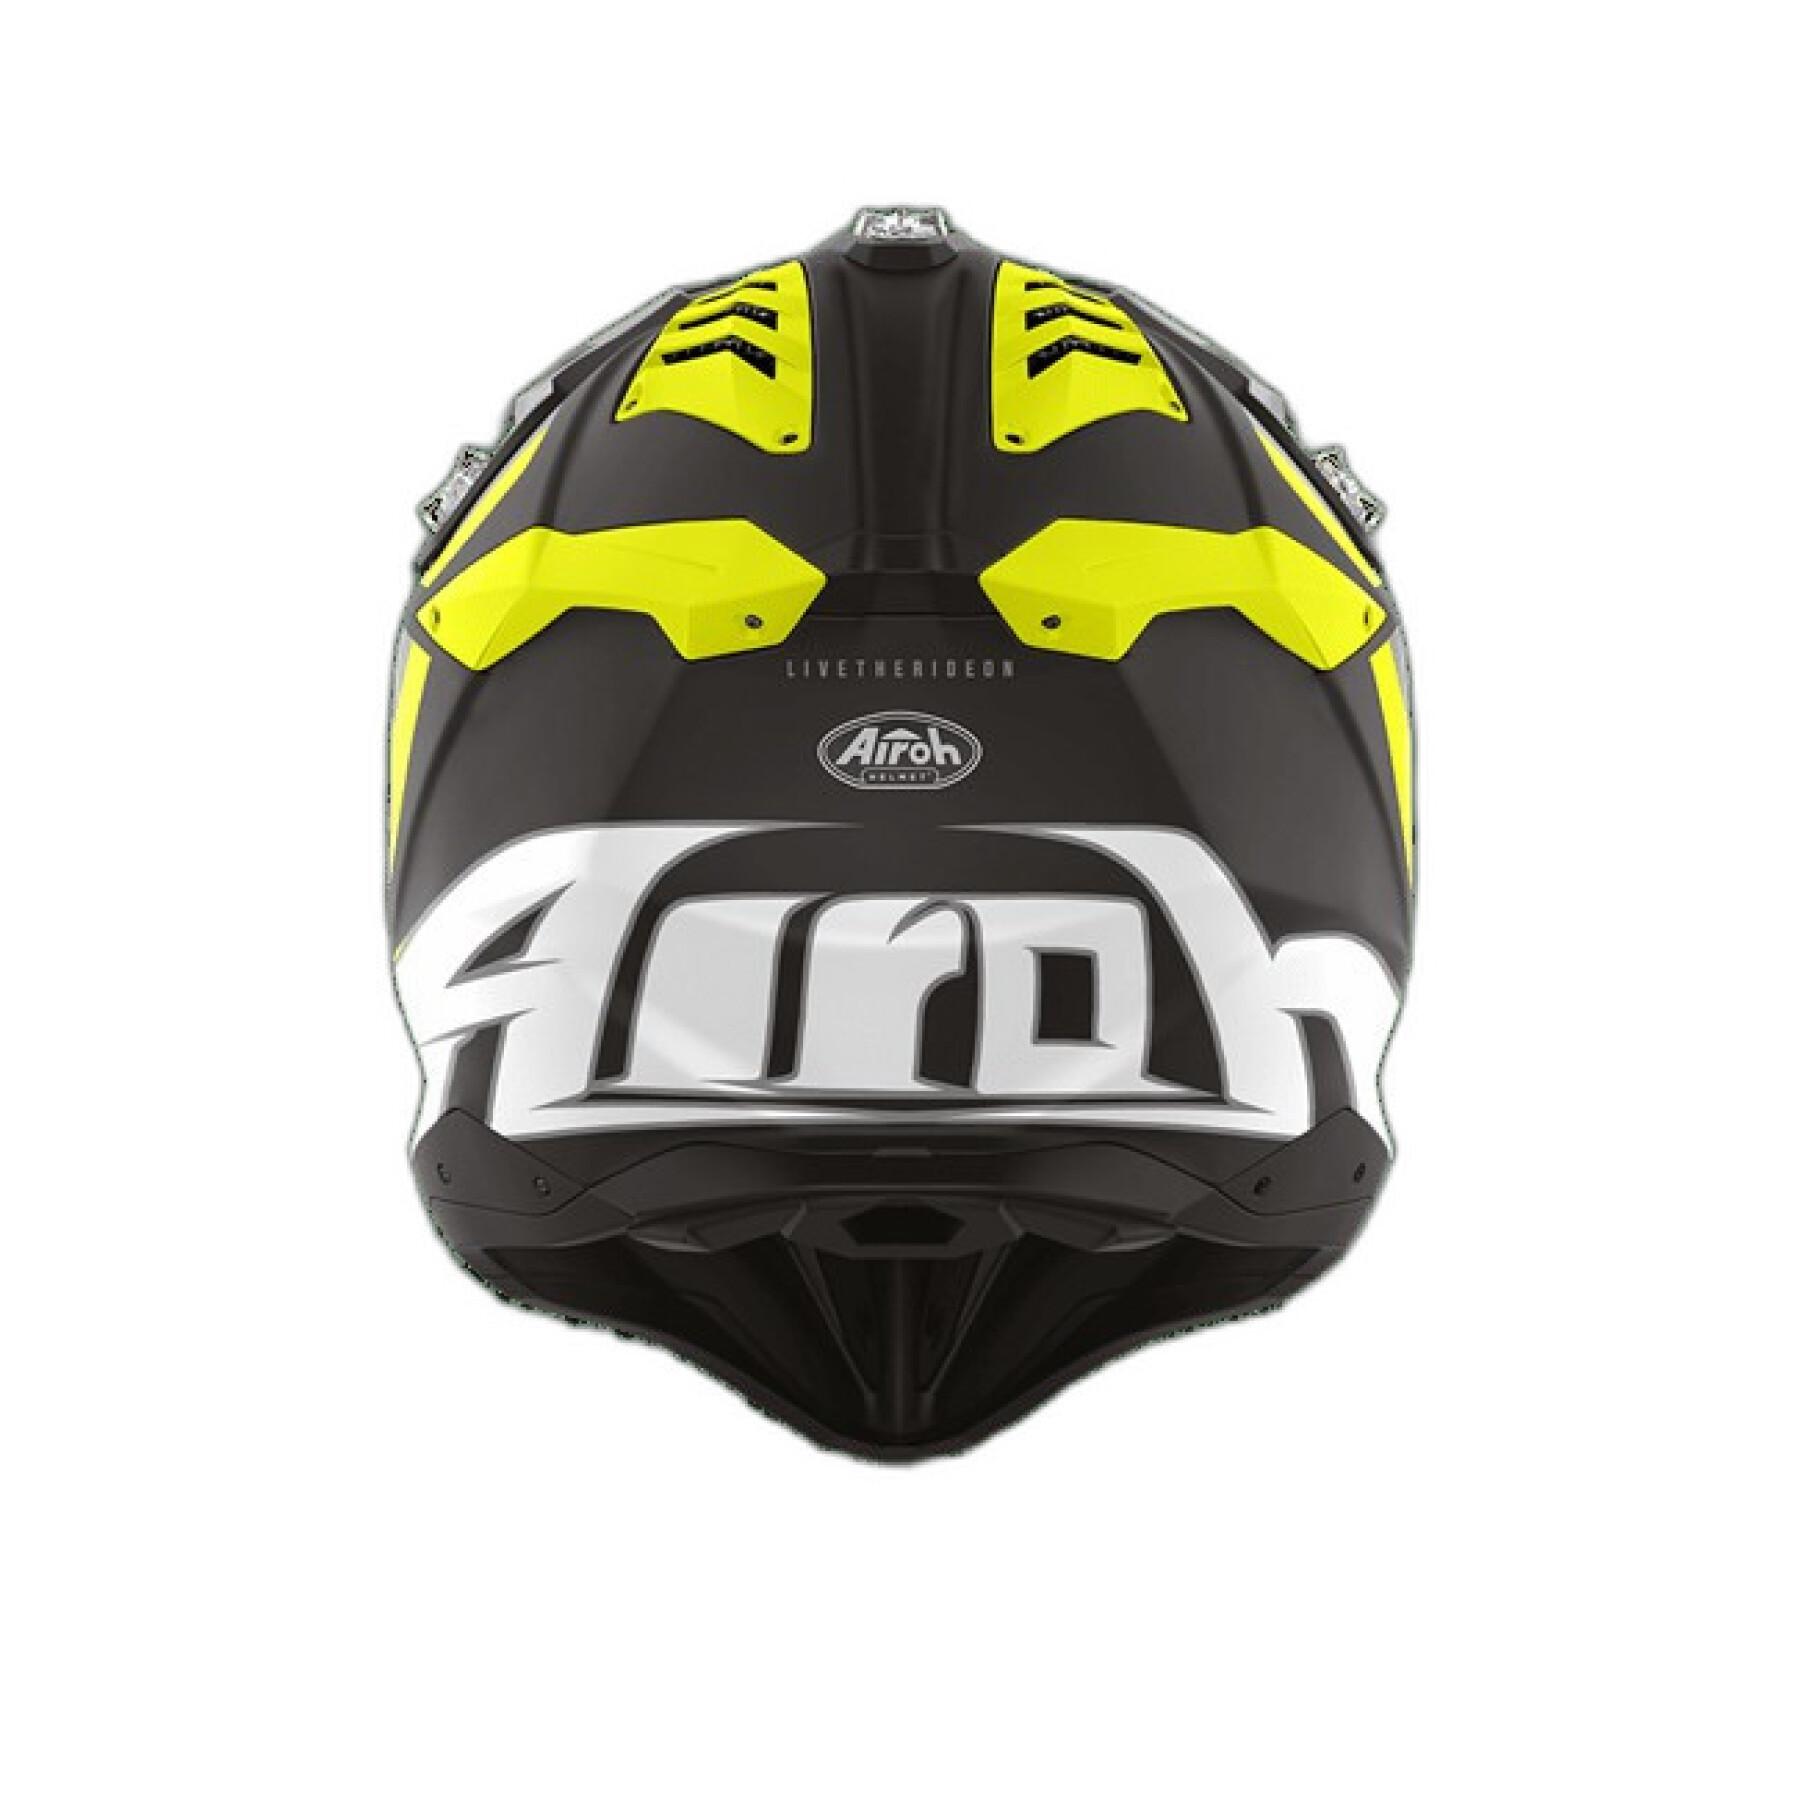 Motorcycle helmet Airoh Aviator 3 Glory